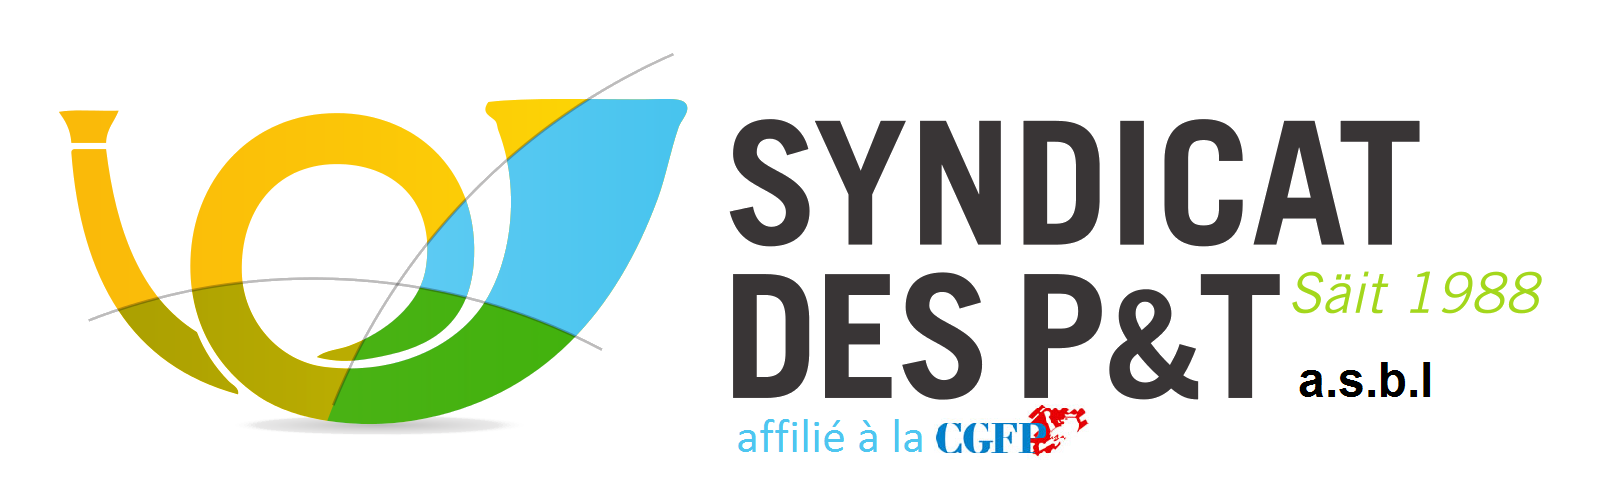 logo syndicat cgfp